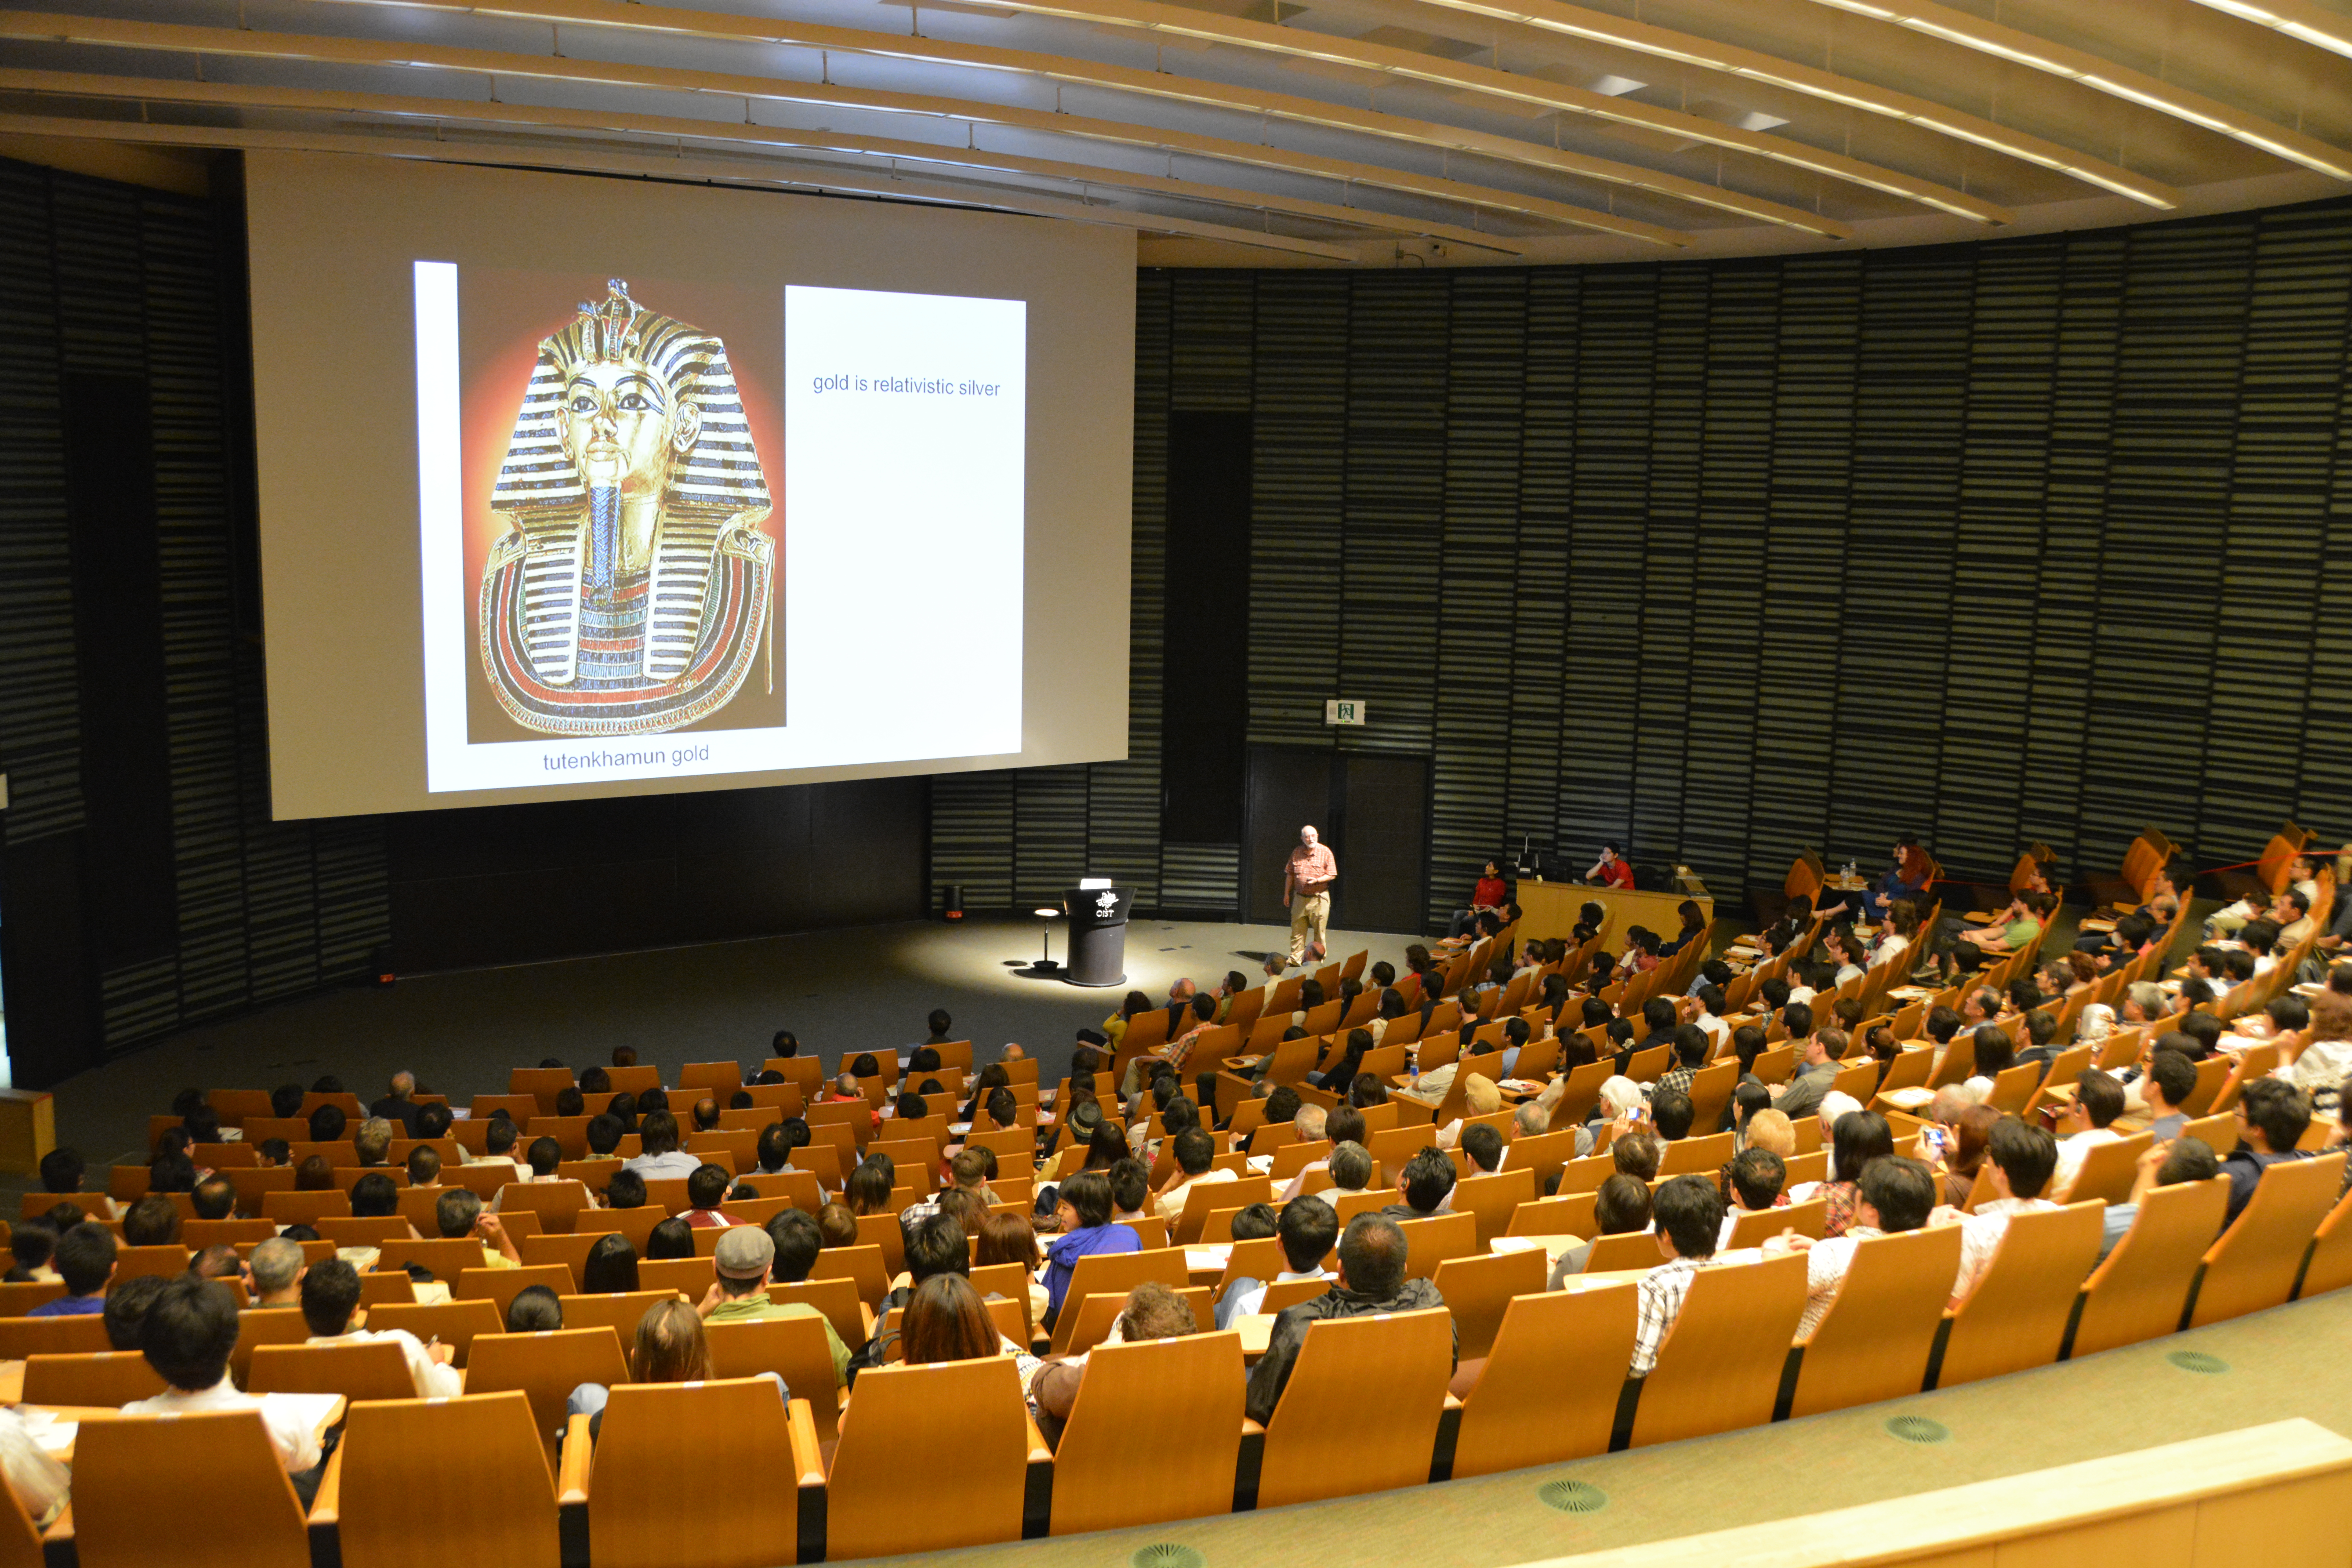 2013年5月25日、OIST講堂にて350名を超える聴衆を前に講演を行うマイケル・ベリー卿。